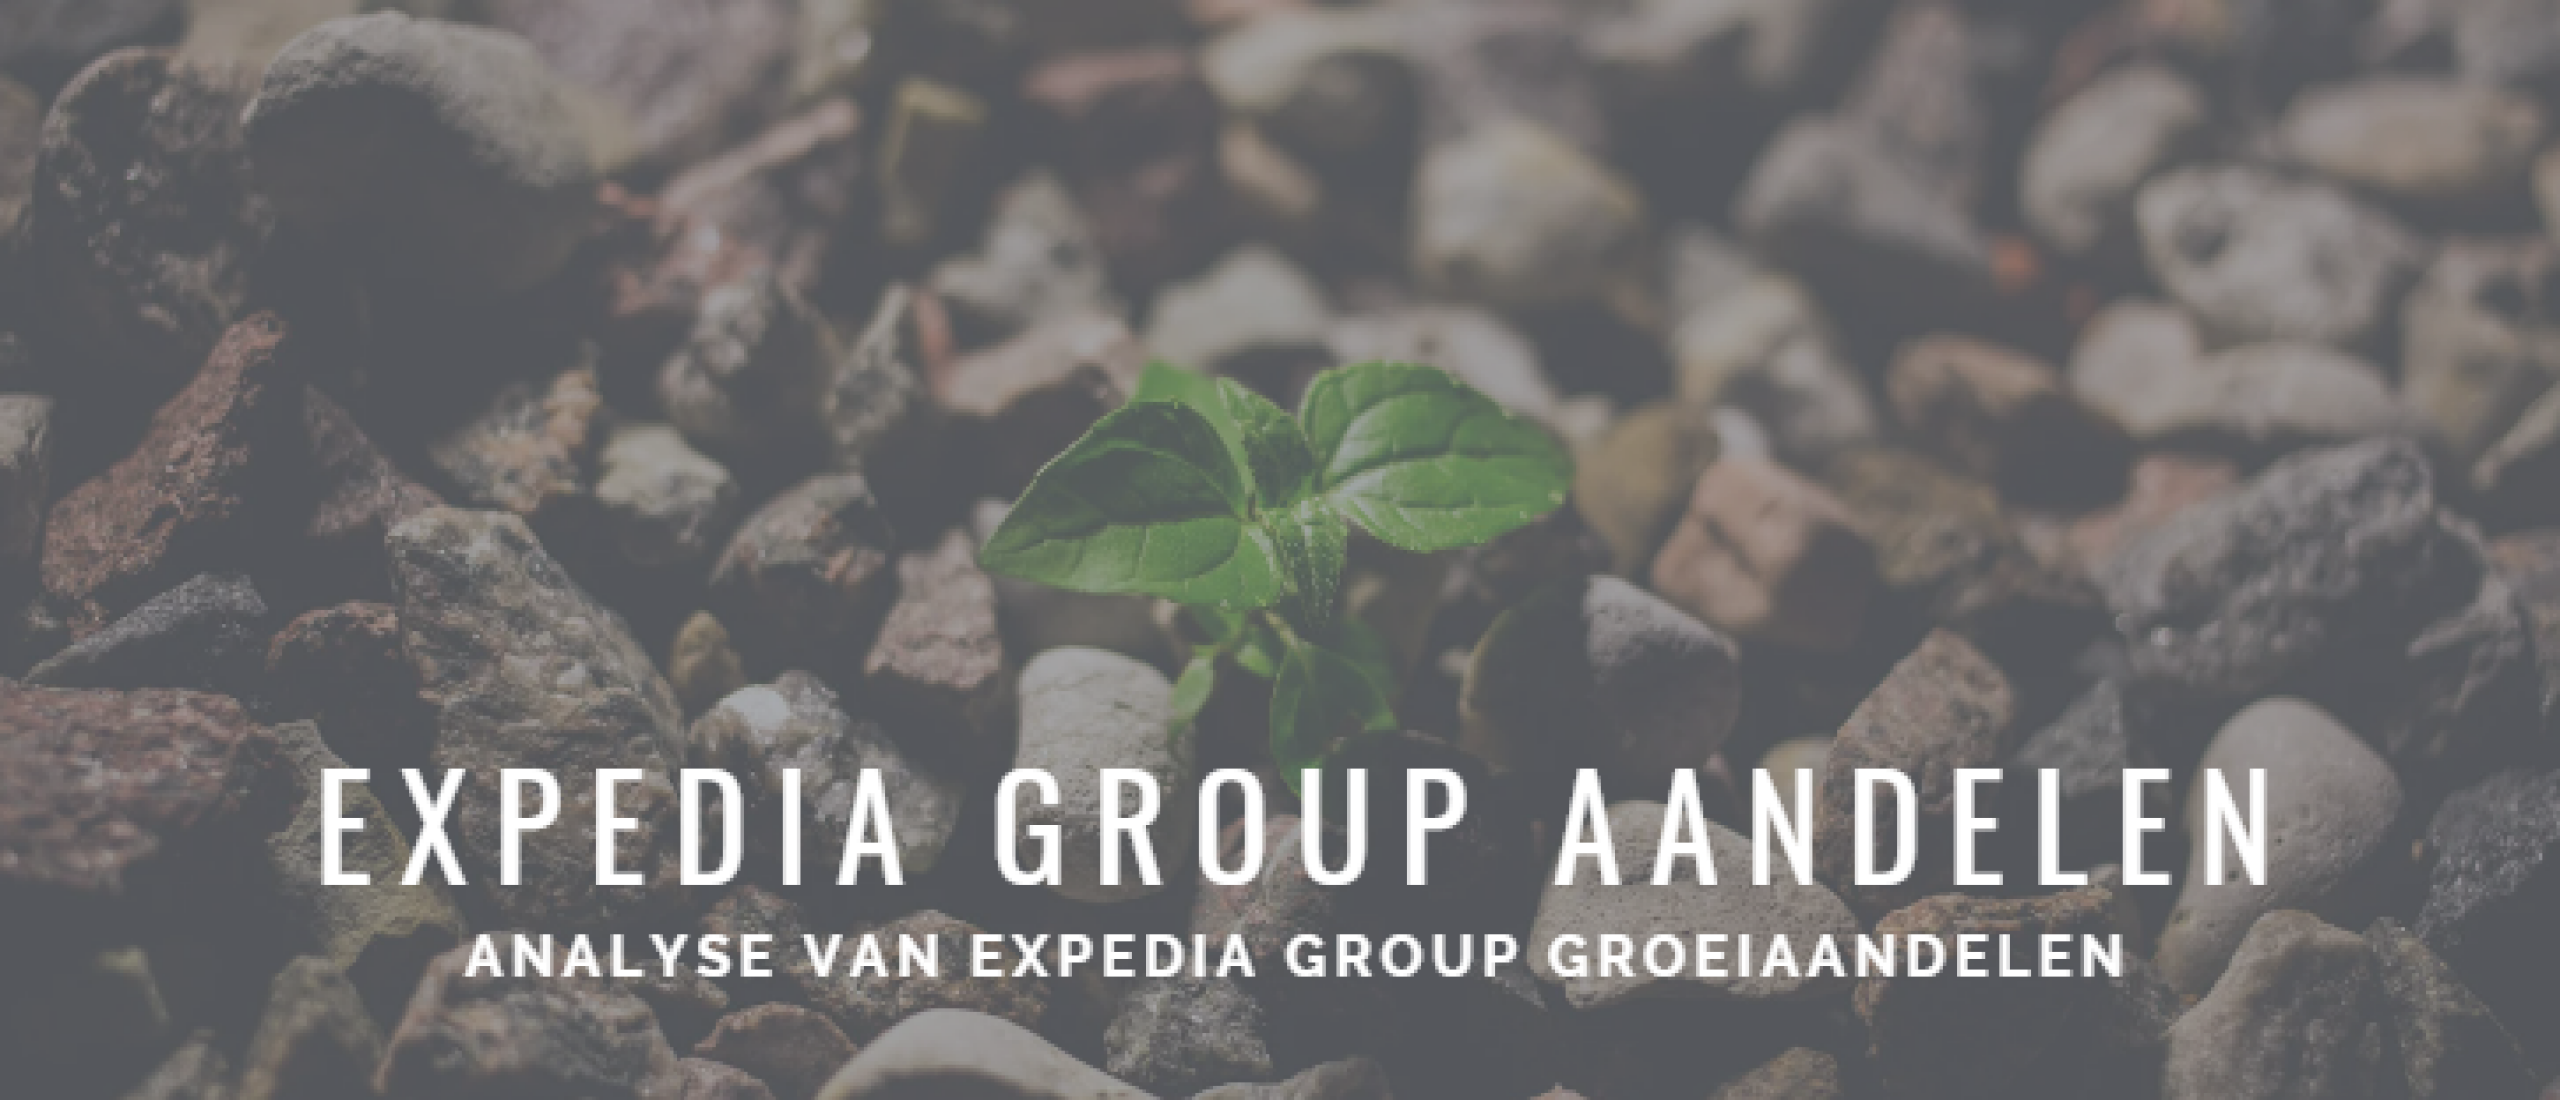 Expedia Group Aandelen kopen? Analyse +42% Groei | Happy Investors